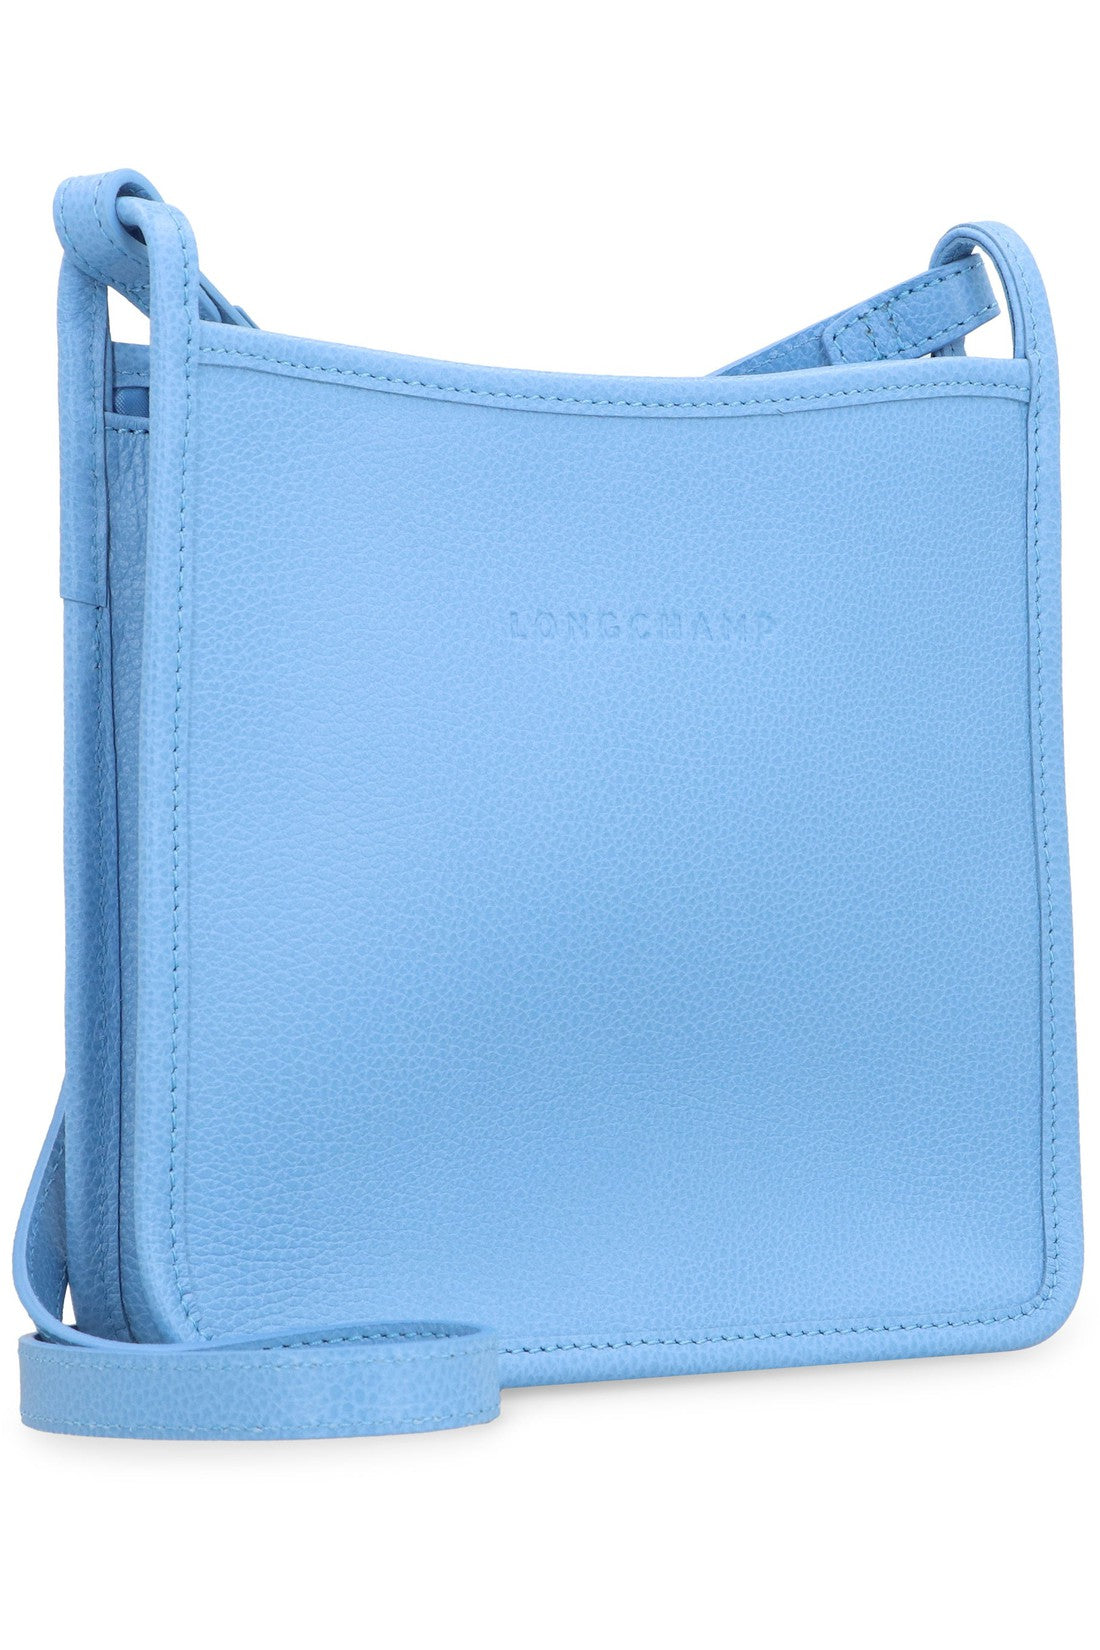 Longchamp-OUTLET-SALE-Le Foulonné S leather crossbody bag-ARCHIVIST